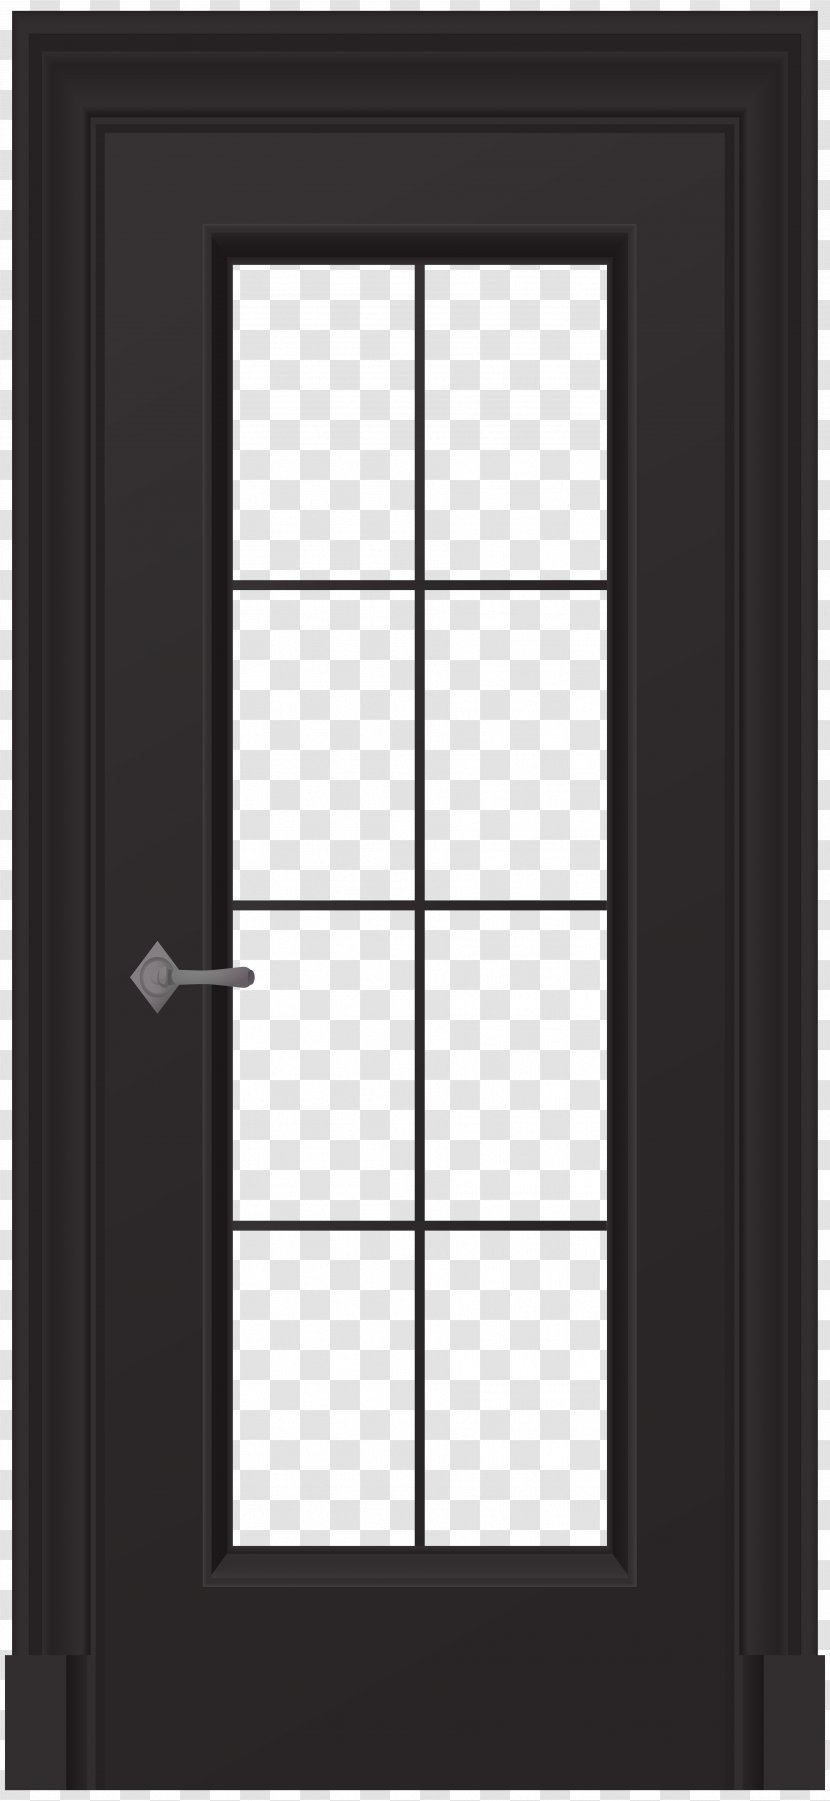 Door Clip Art - Doors And Windows Transparent PNG